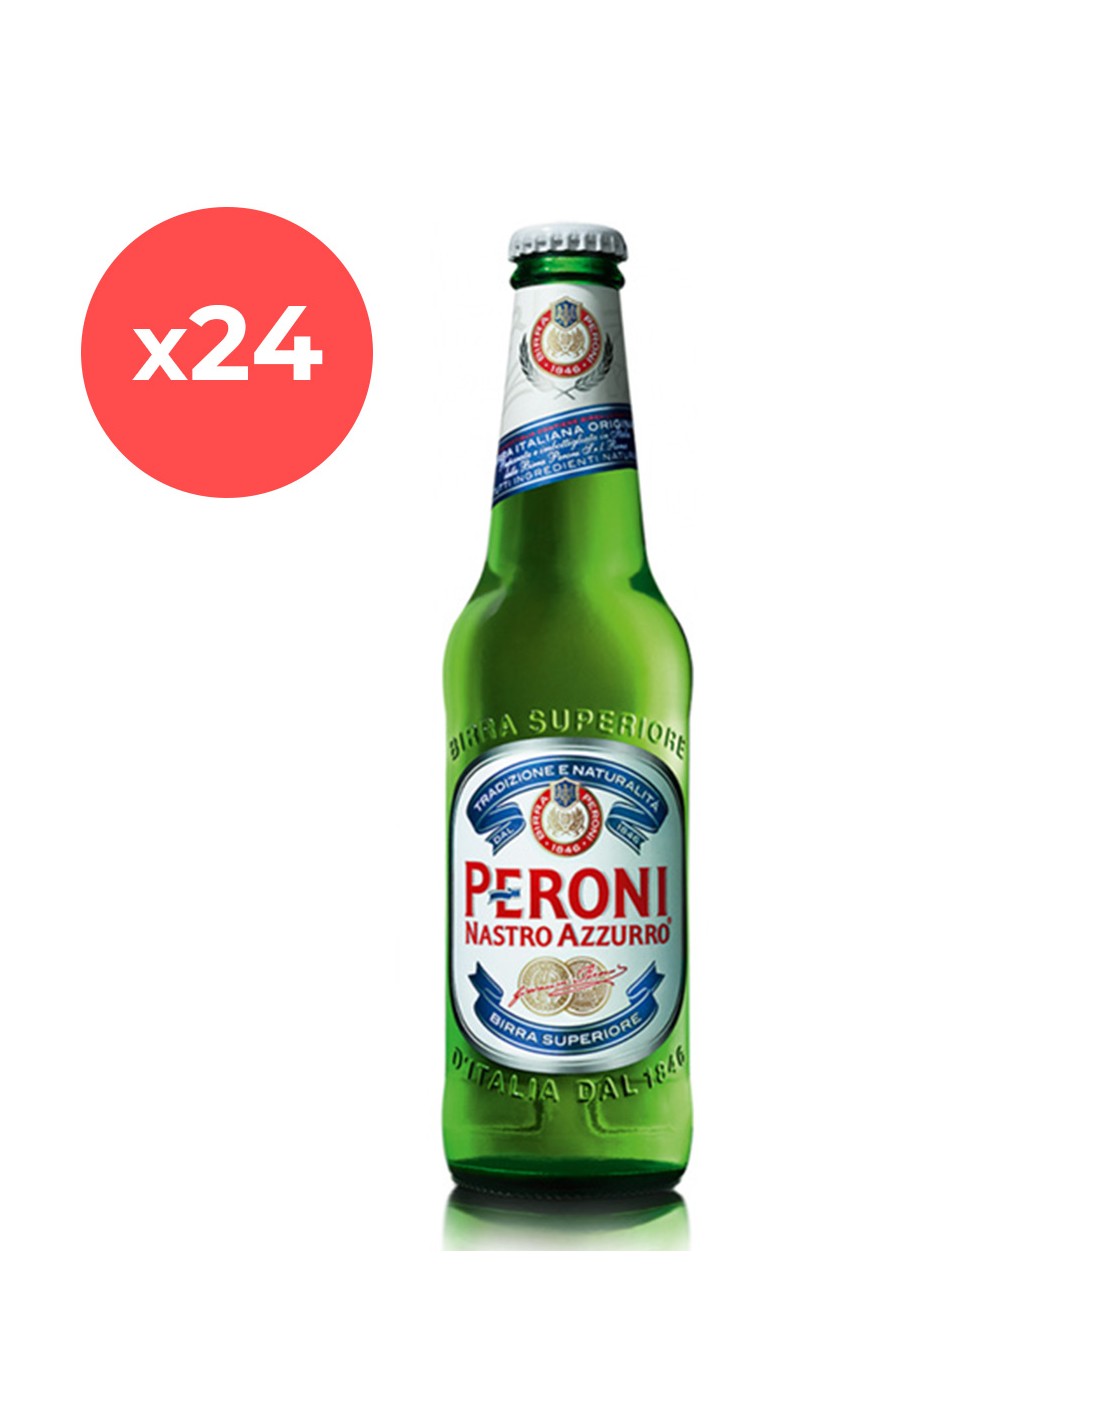 Bax 24 bucati bere blonda, filtrata Peroni Nastro, 5.1% alc., 0.33L, sticla, Italia alcooldiscount.ro